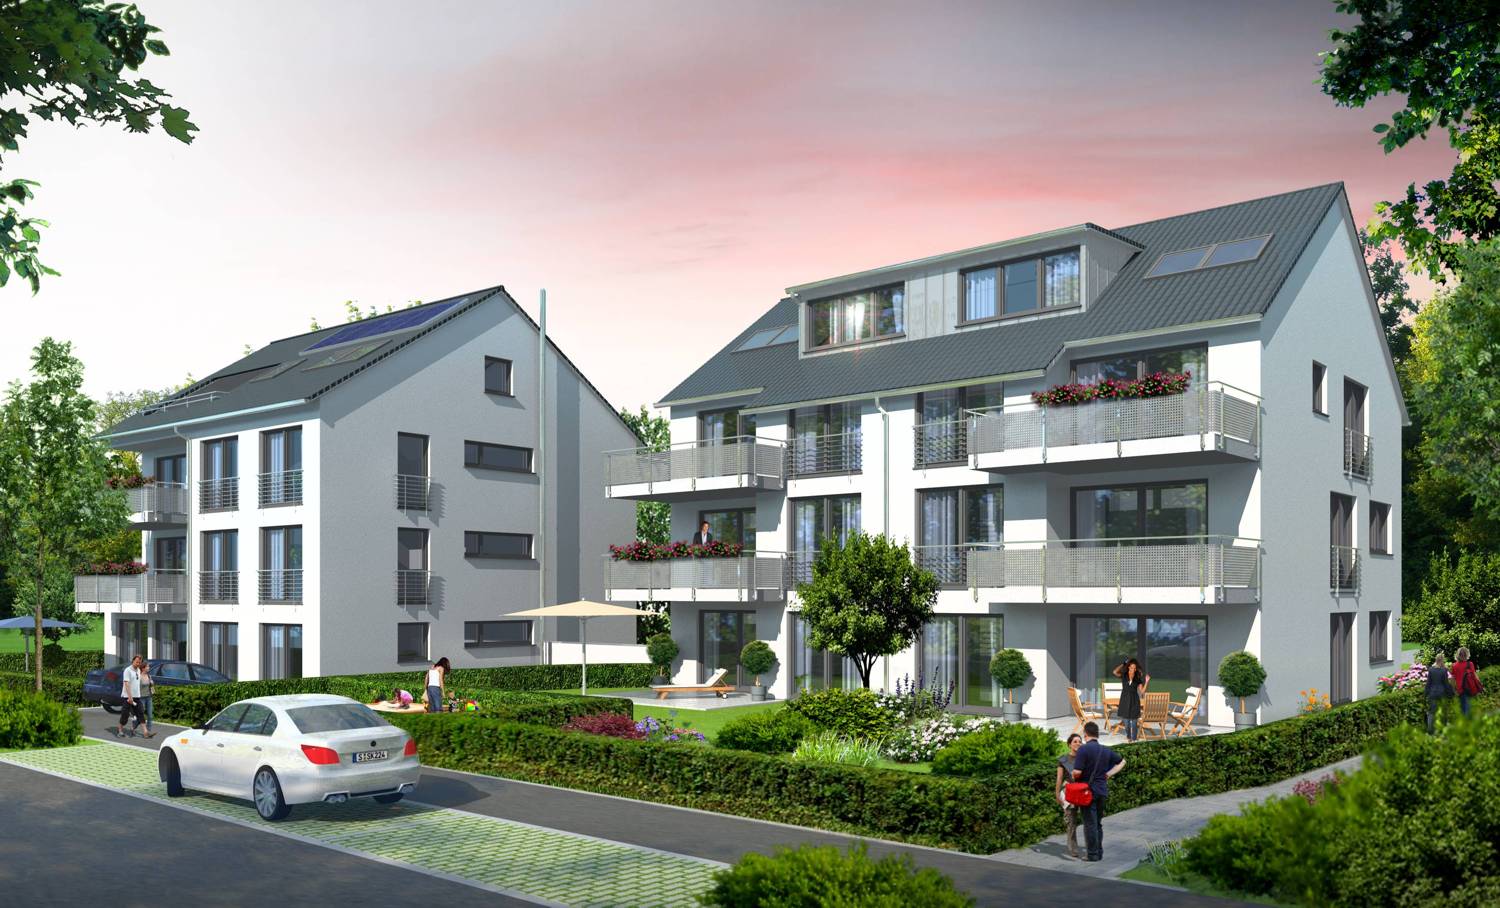 3D Architektur Visualisierung von 2 Mehrfamilienhäusern in HONIGWIESENSTRASSE 26/28, STUTTGART - VAIHINGEN, für SAS Bauträger GmbH (Jahr 2011)